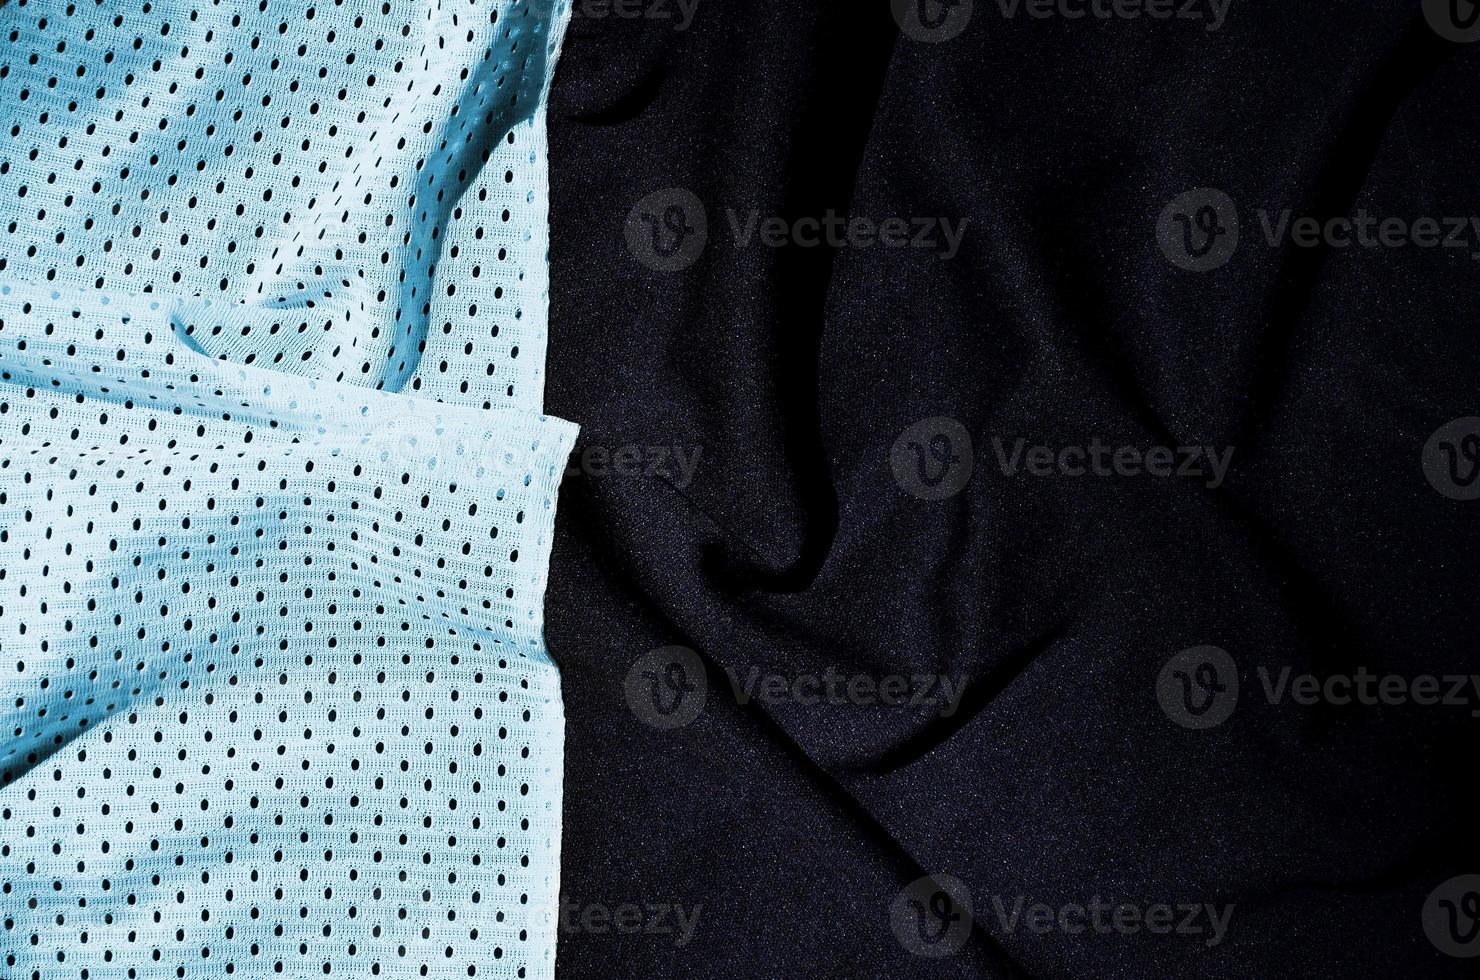 sport kleding kleding stof structuur achtergrond, top visie van licht blauw kleding textiel oppervlakte foto